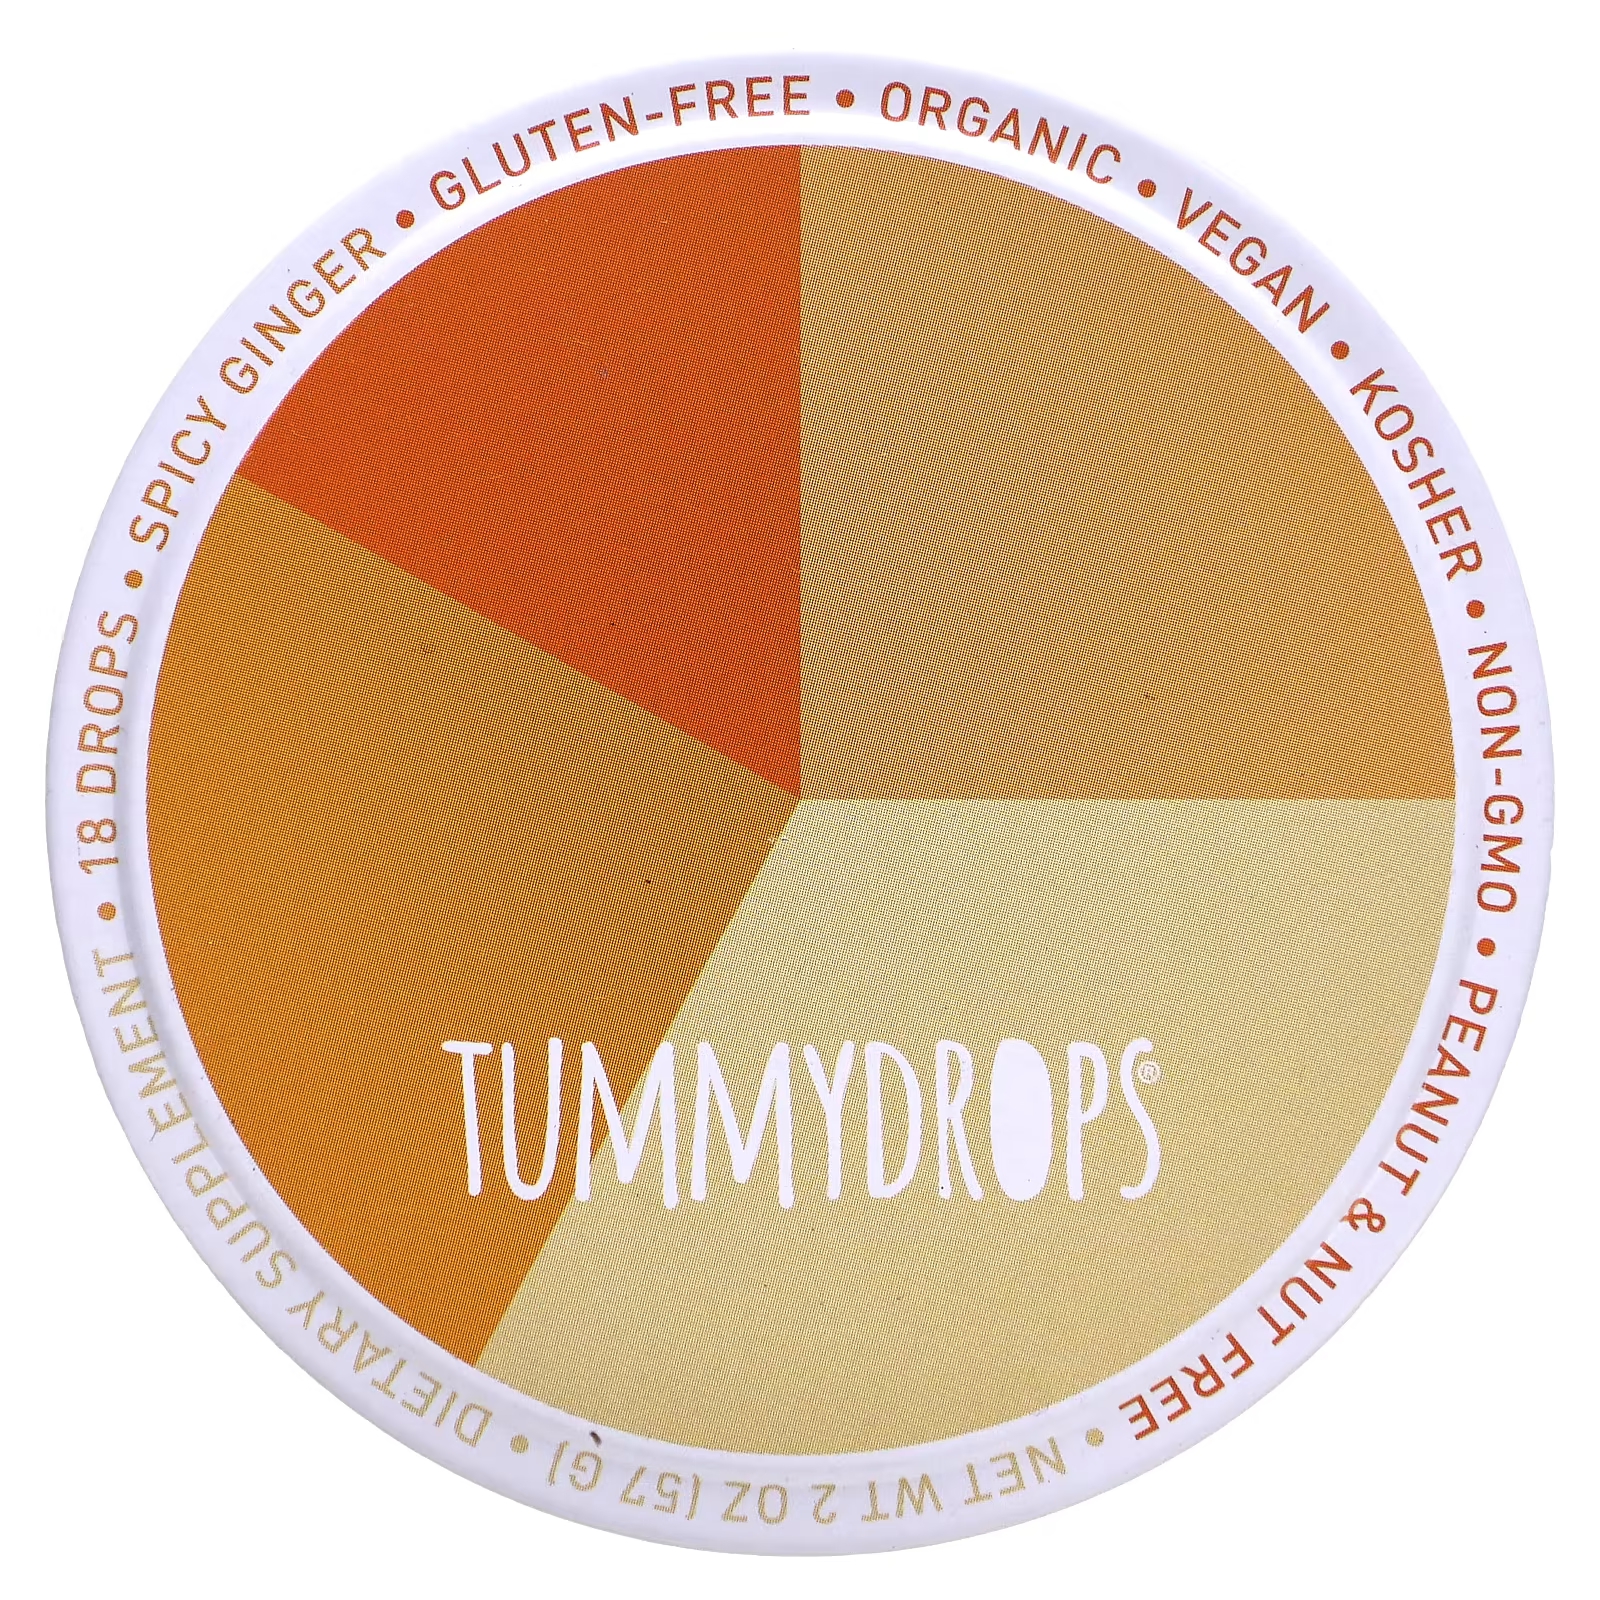 Пряный имбирь Tummydrops, 18 капель tummydrops крем с органическим имбирем и ириской 18 капель 57 г 2 унции